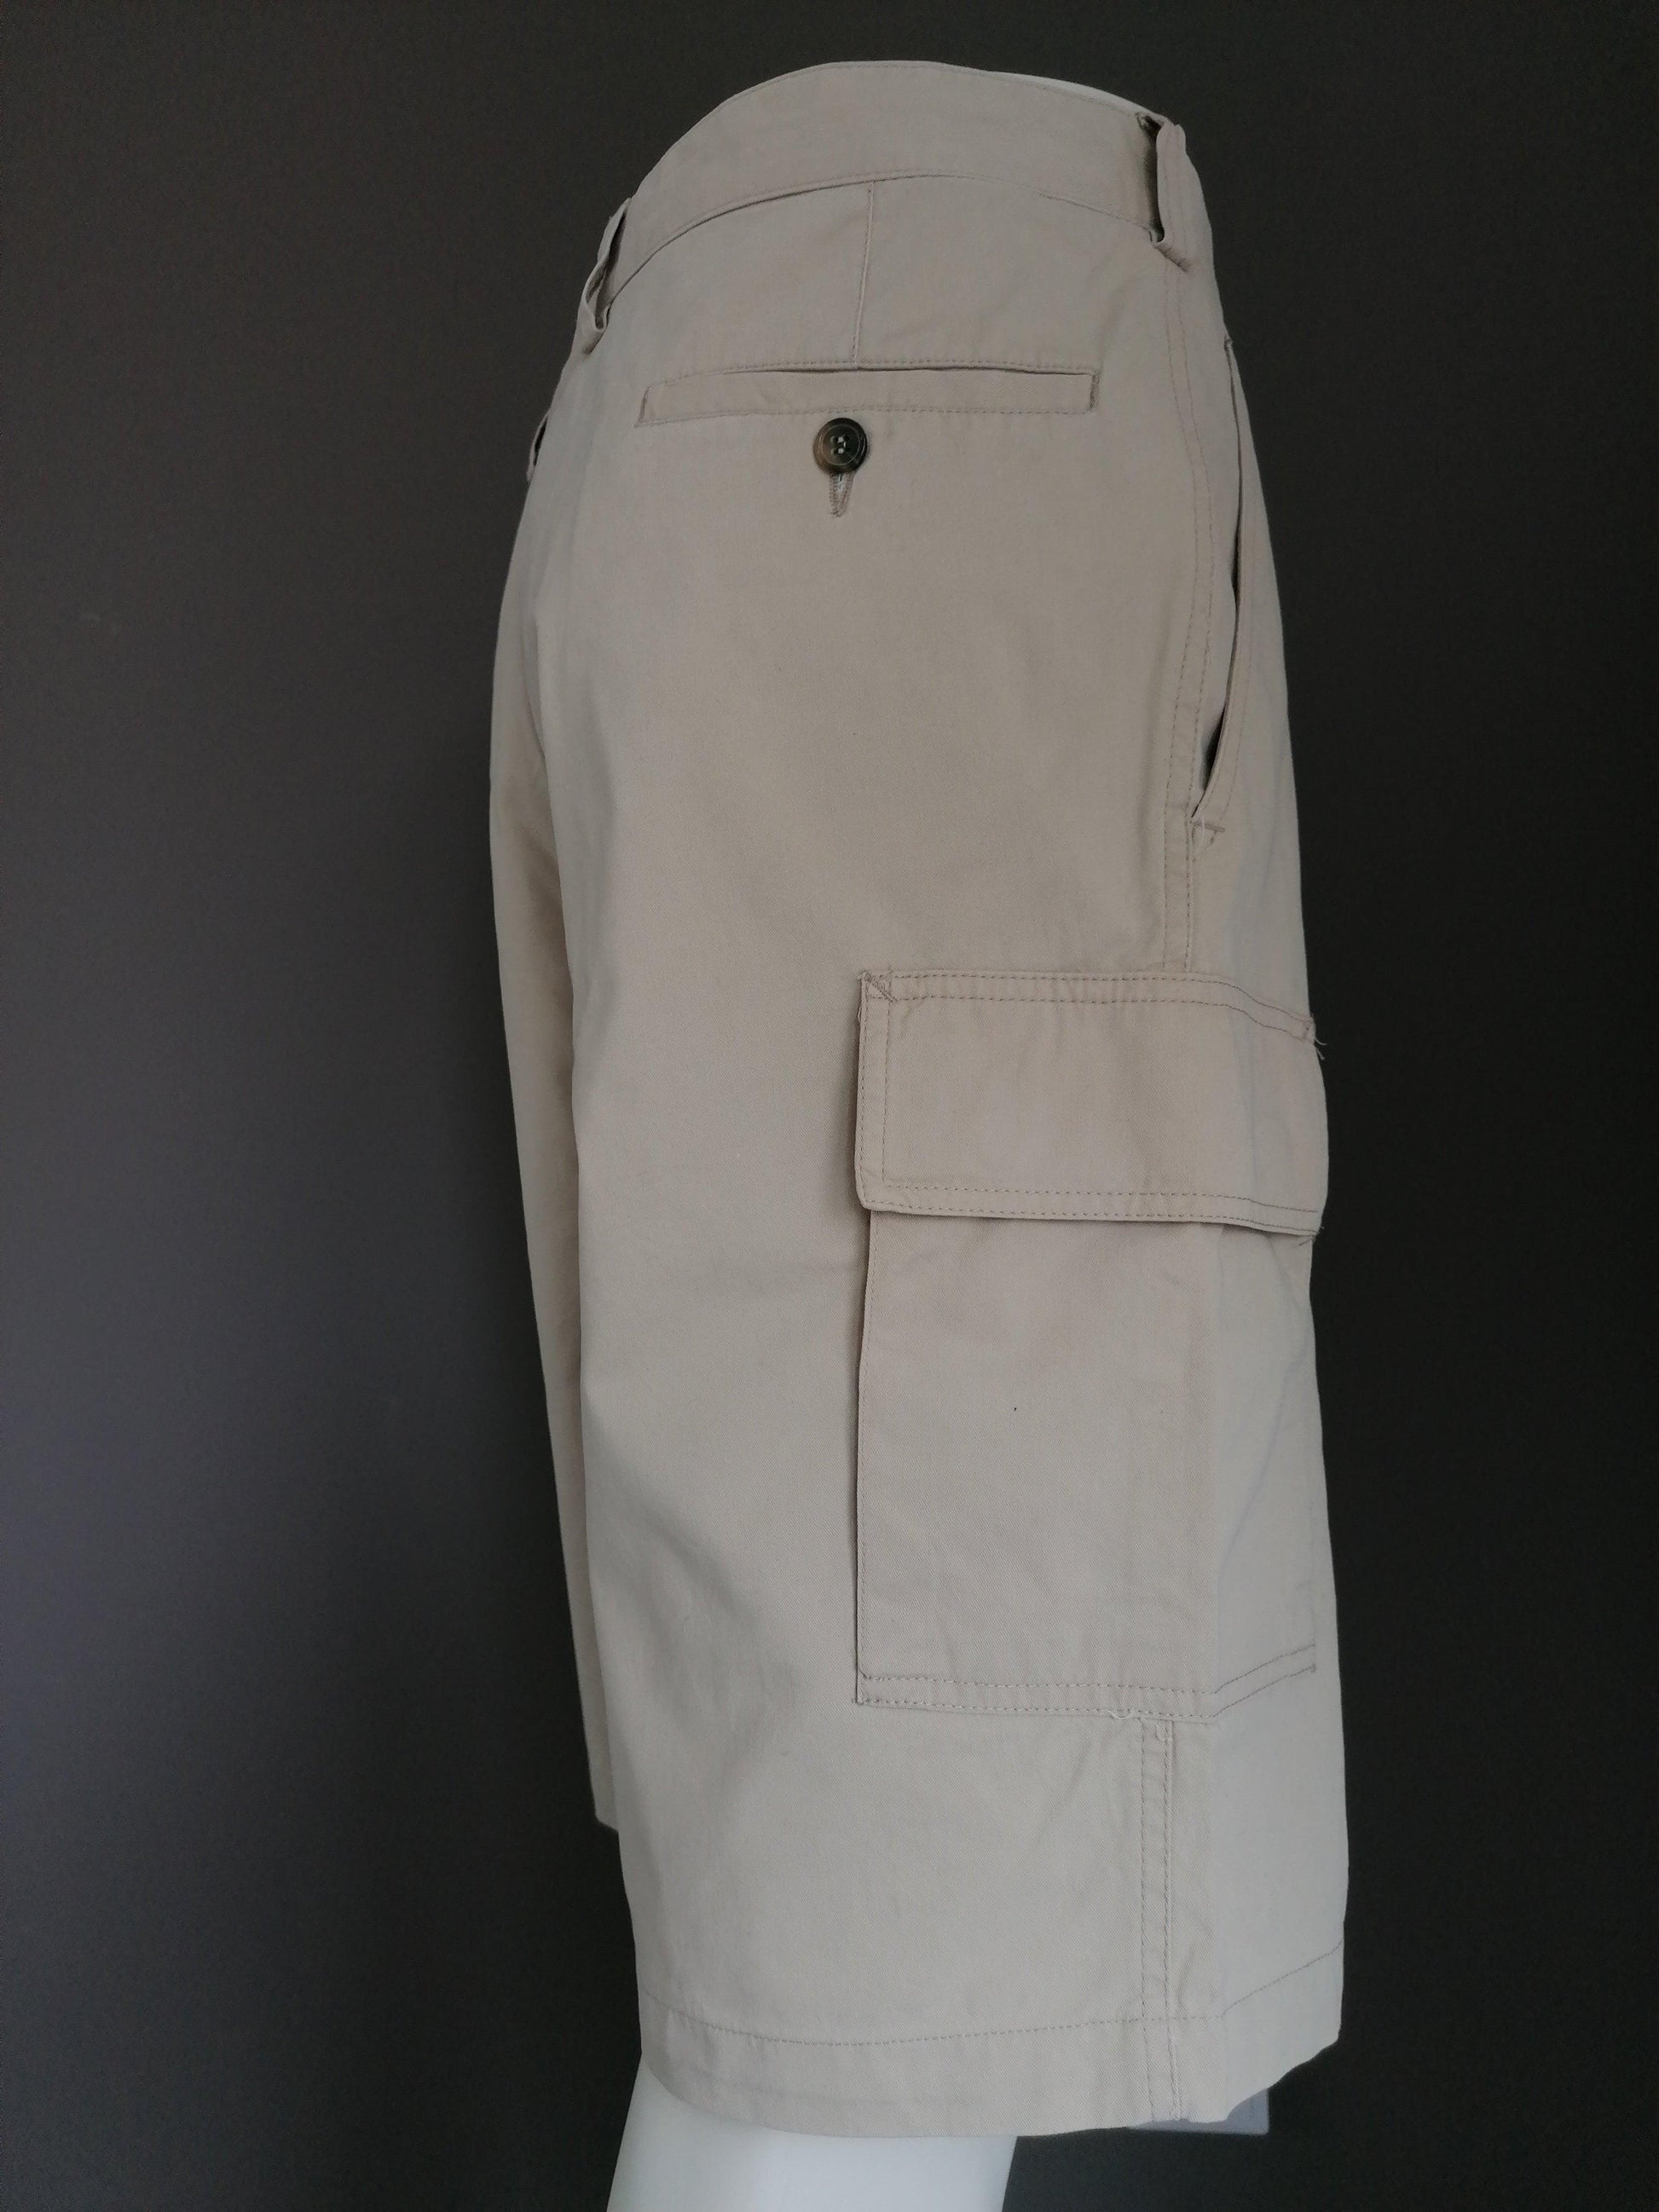 Brixon korte broek met zakken. Beige gekleurd. Maat 54. L / XL - EcoGents